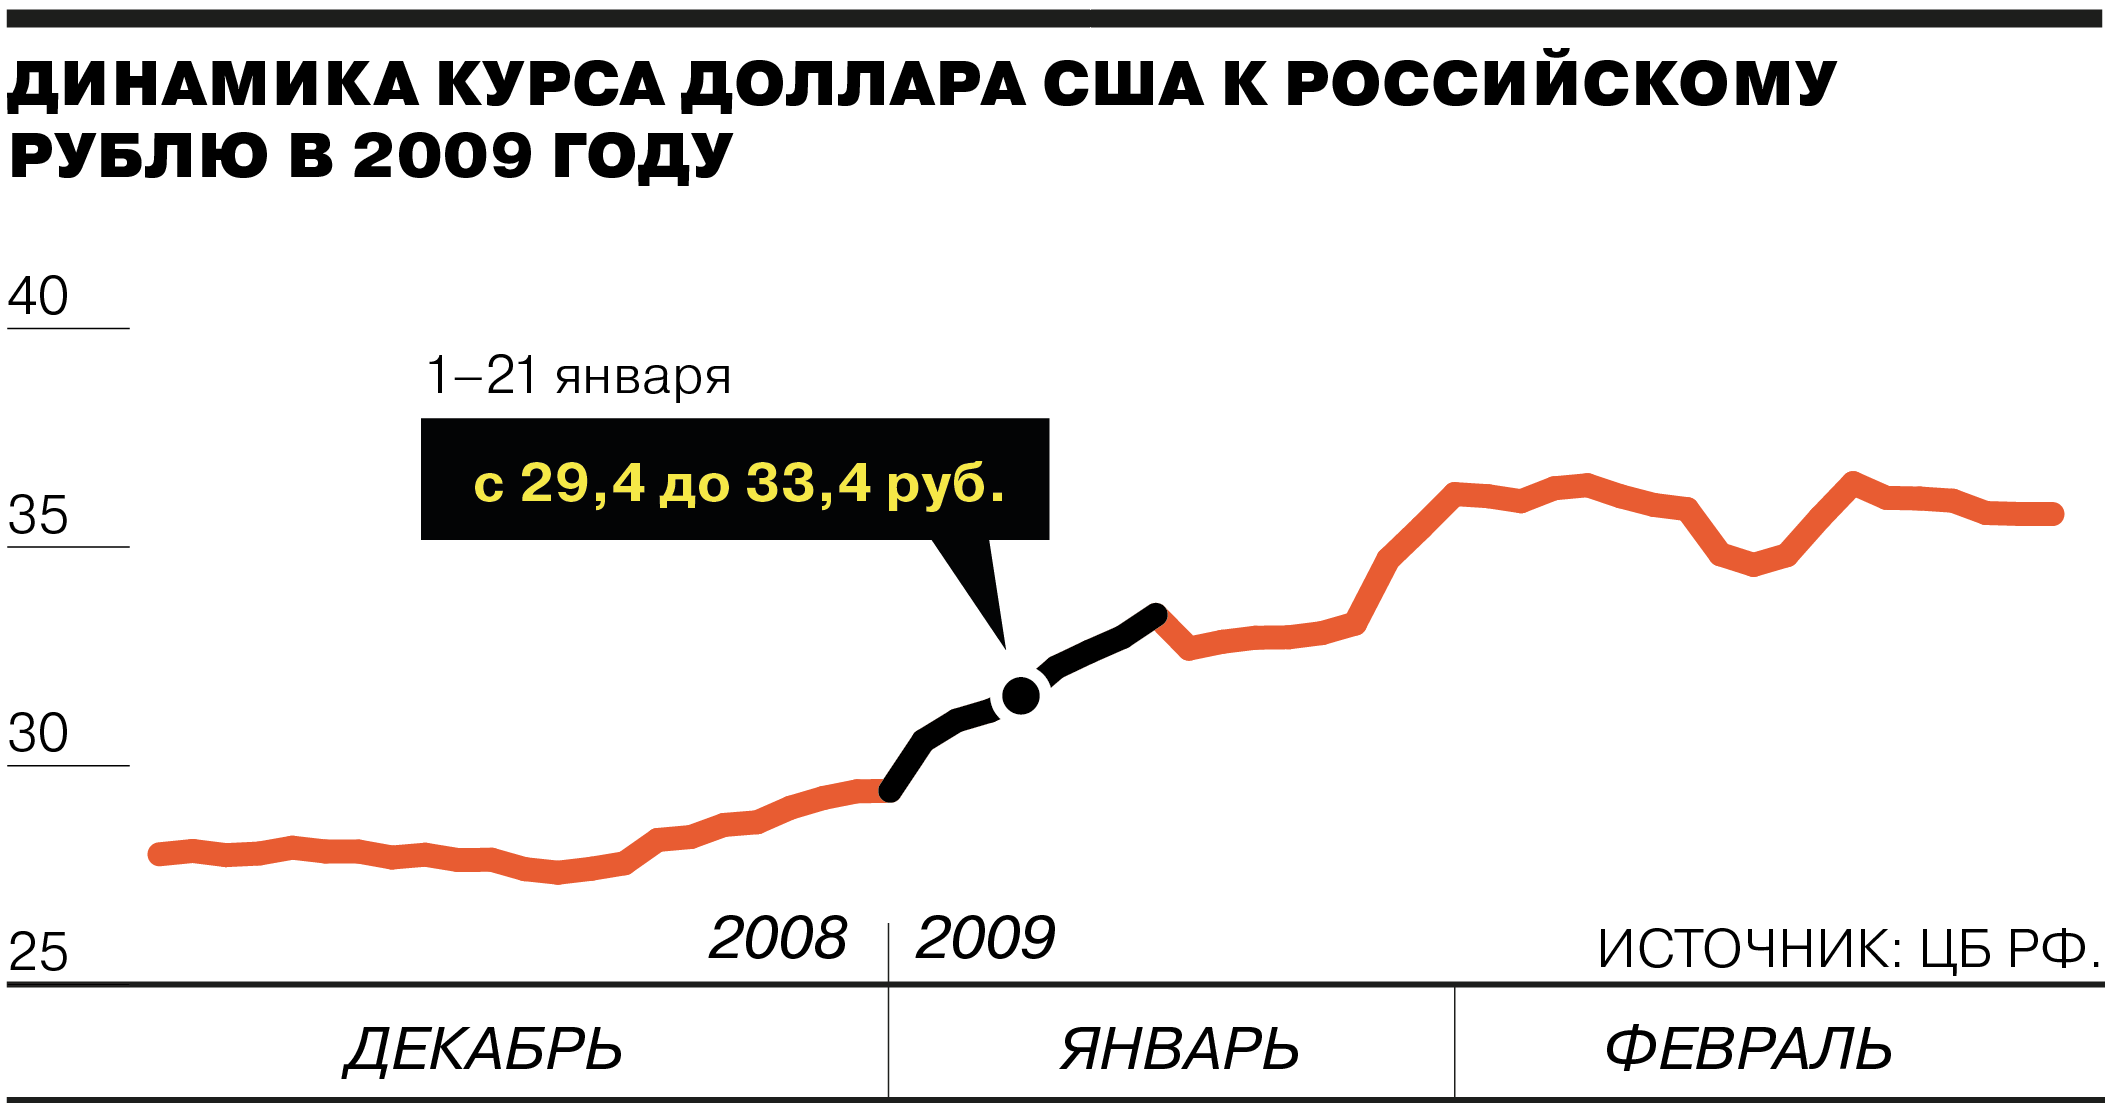 Доклад по теме Полная конвертируемость рубля за два года